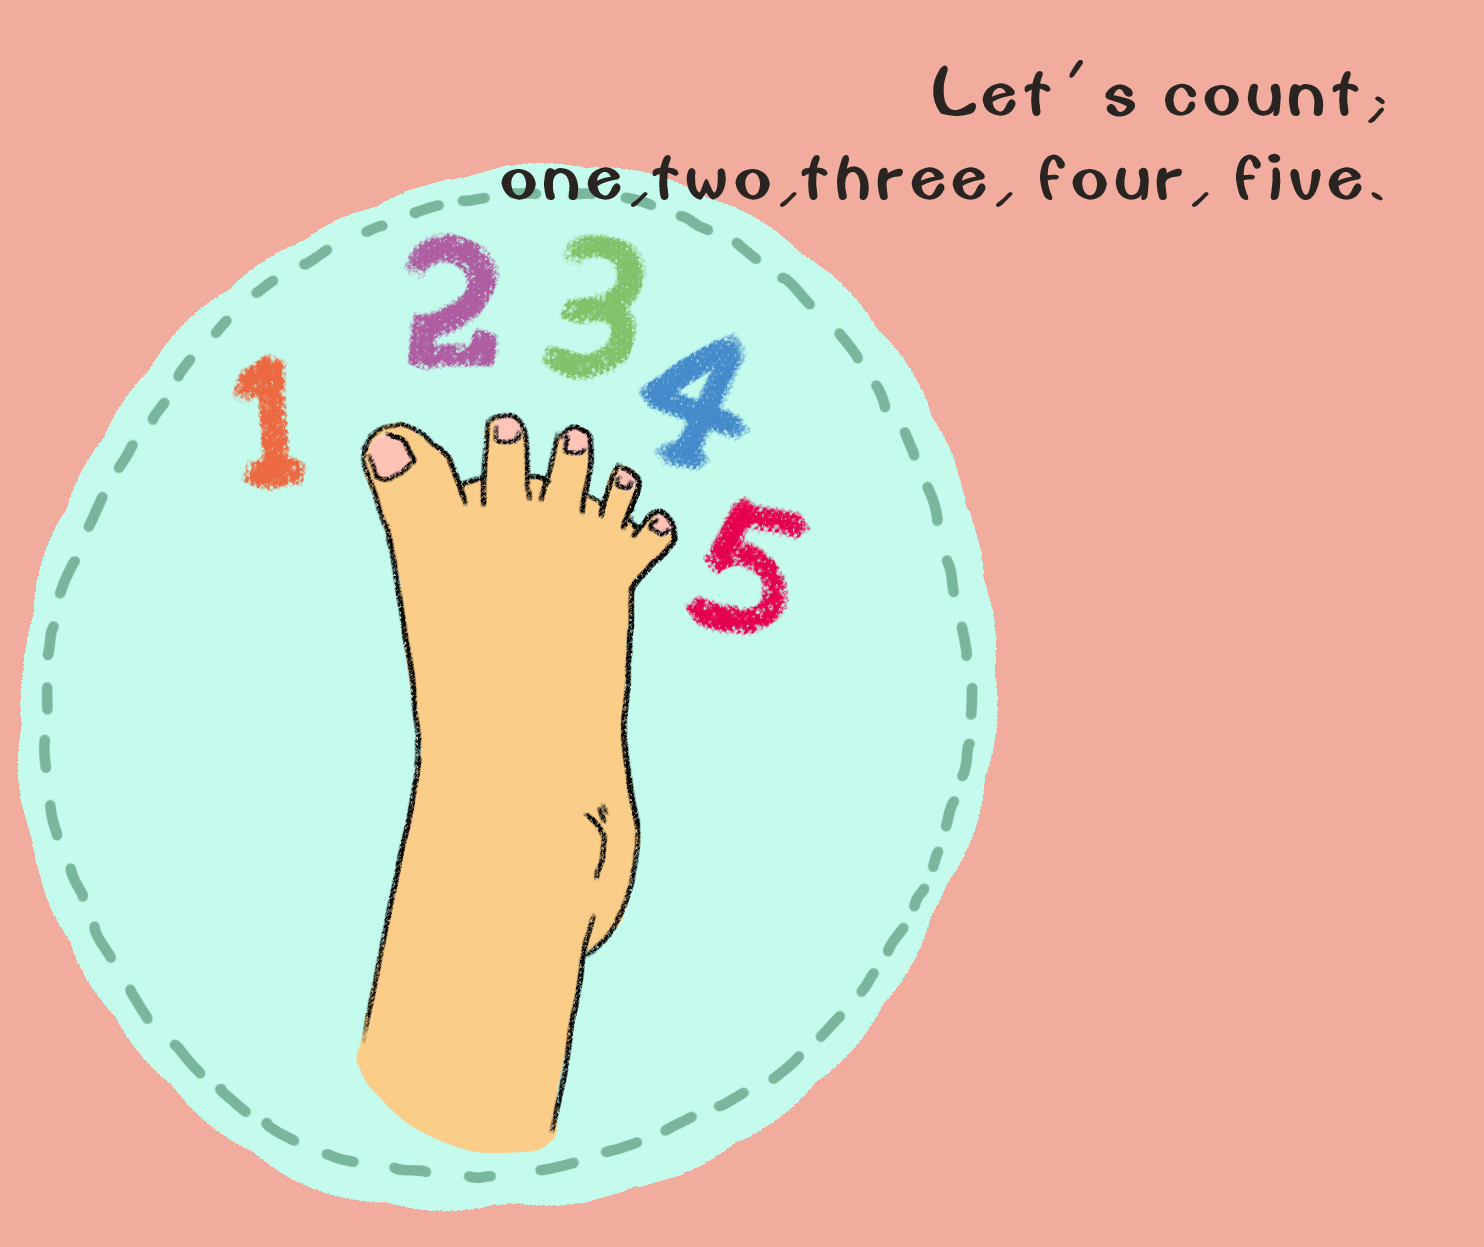 一天一故事——how many toes are there on your foot